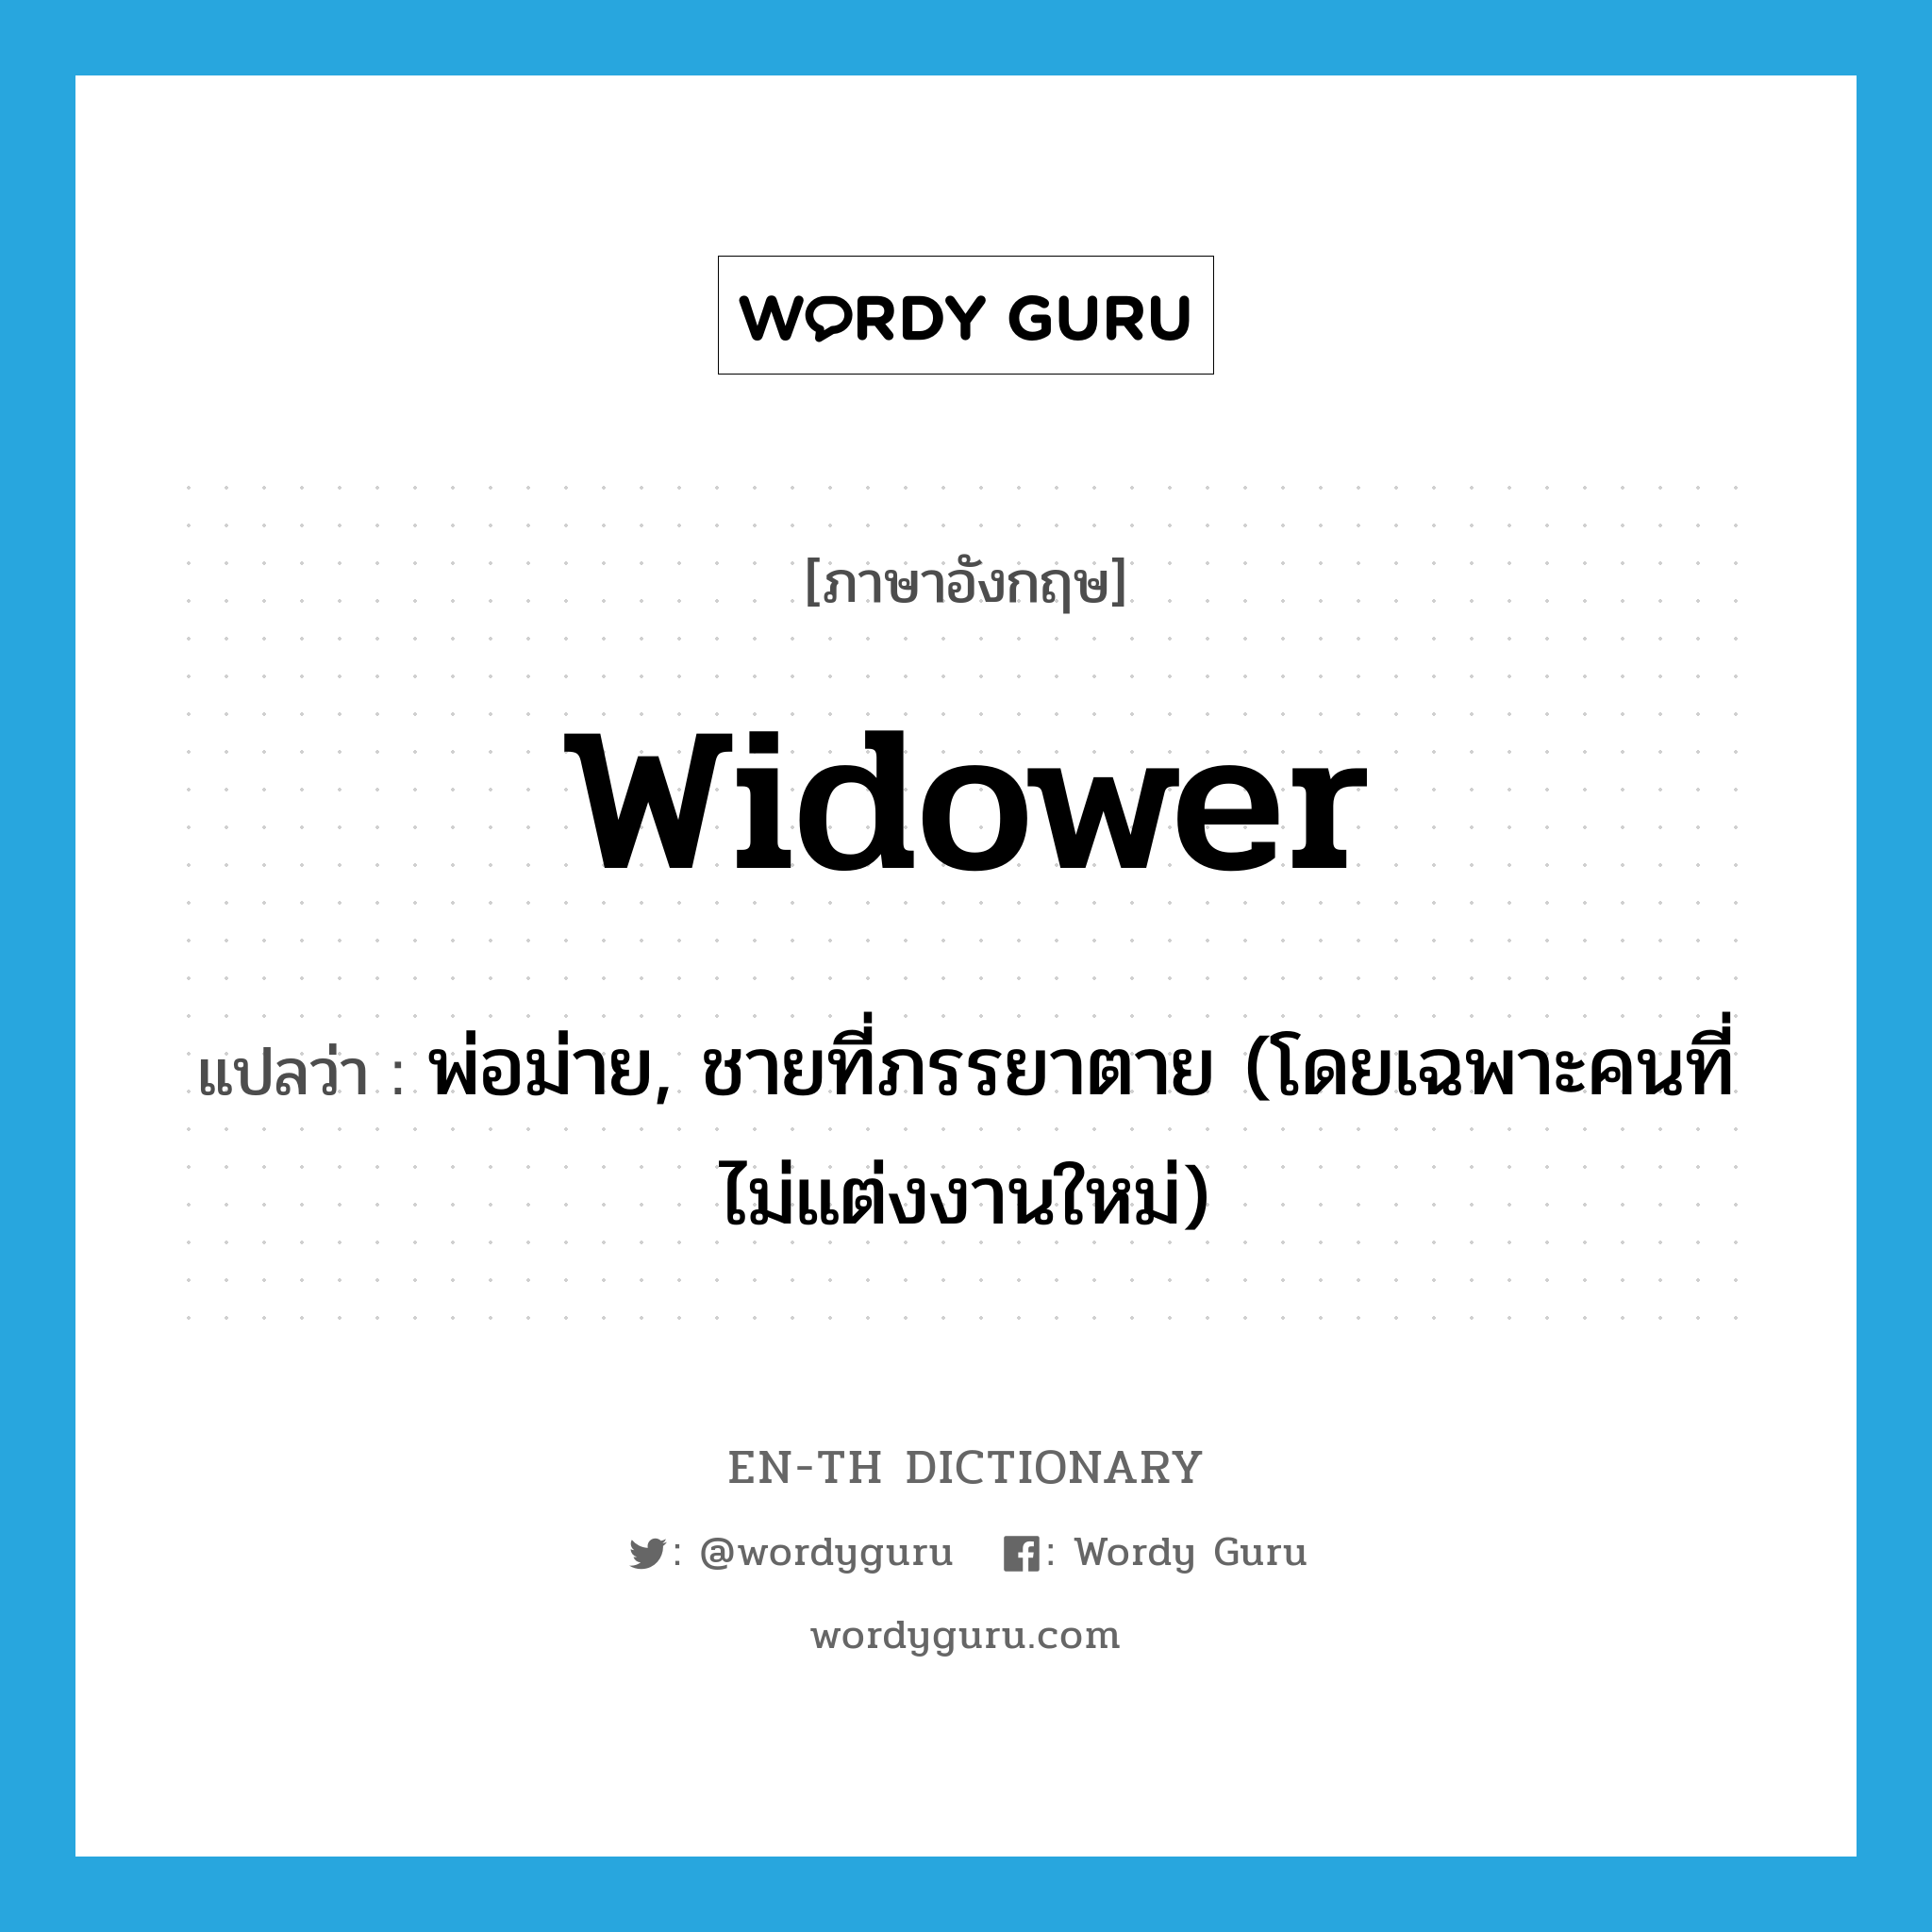 widower แปลว่า?, คำศัพท์ภาษาอังกฤษ widower แปลว่า พ่อม่าย, ชายที่ภรรยาตาย (โดยเฉพาะคนที่ไม่แต่งงานใหม่) ประเภท N หมวด N